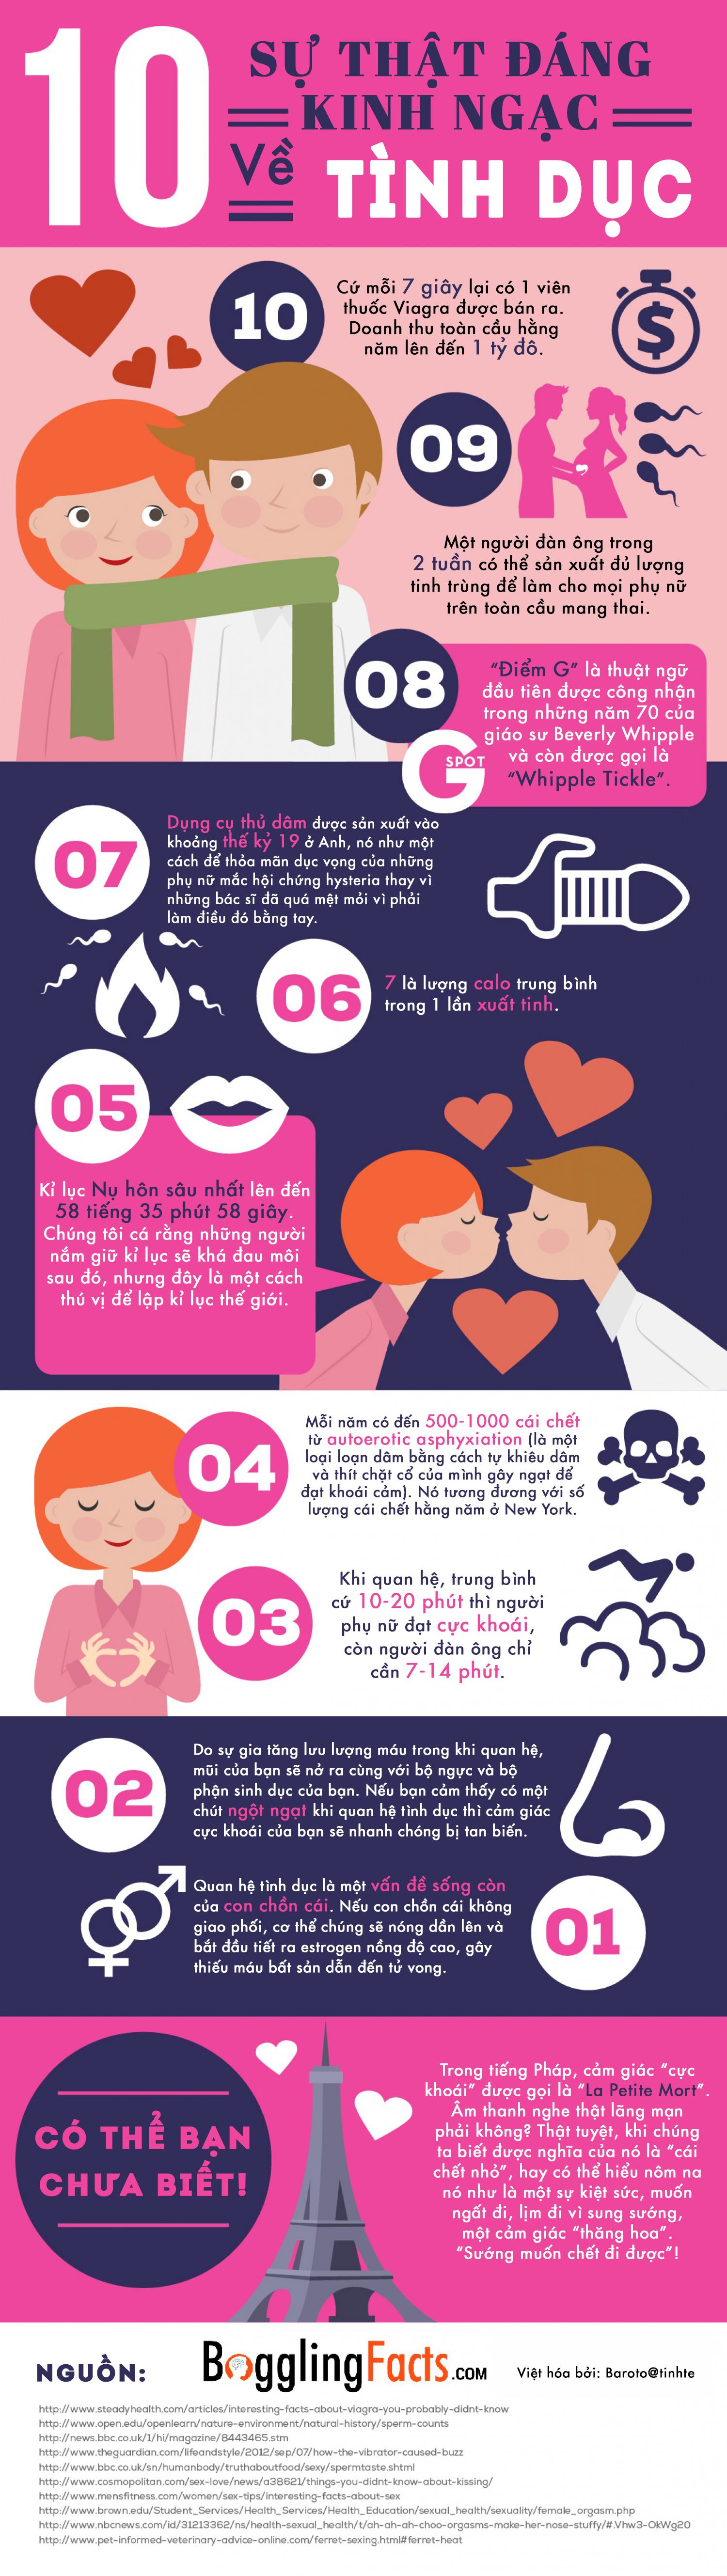 10 sự thật đáng kinh ngạc về tình dục.png